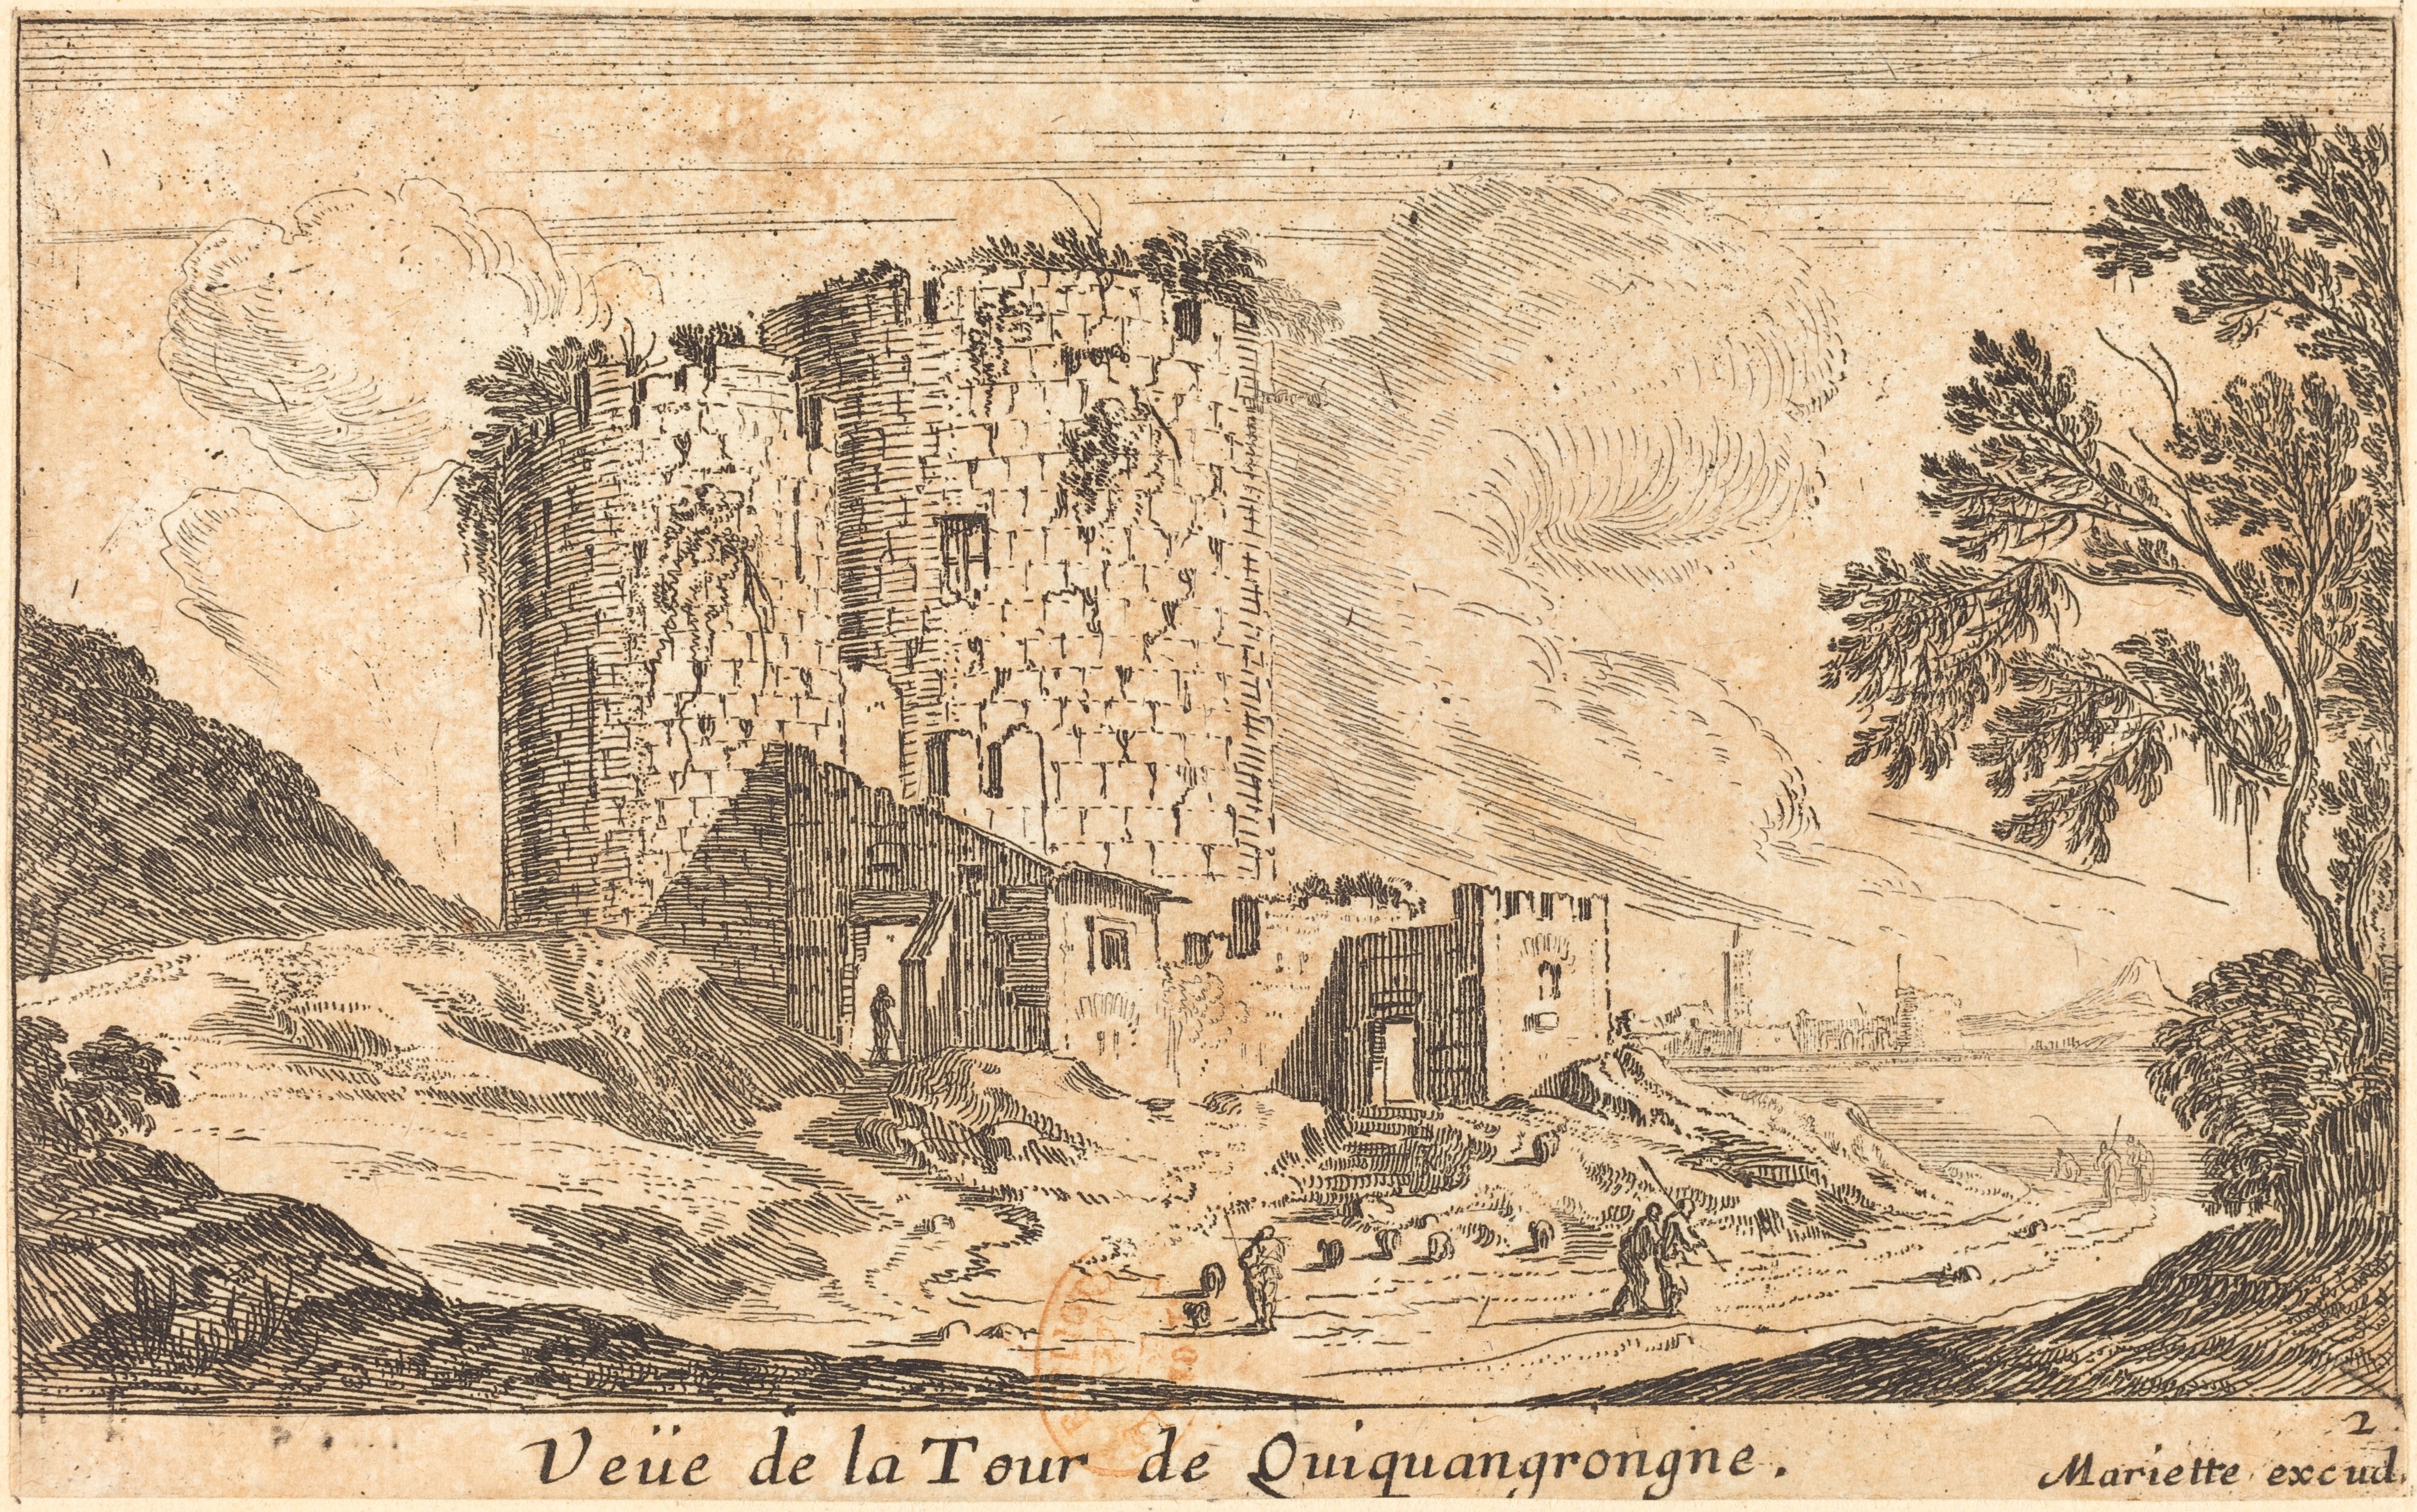 Israël Silvestre : Veüe de la Tour de Quiquangrongne. (Cette tour était près de Bourbon l'Archambault.)